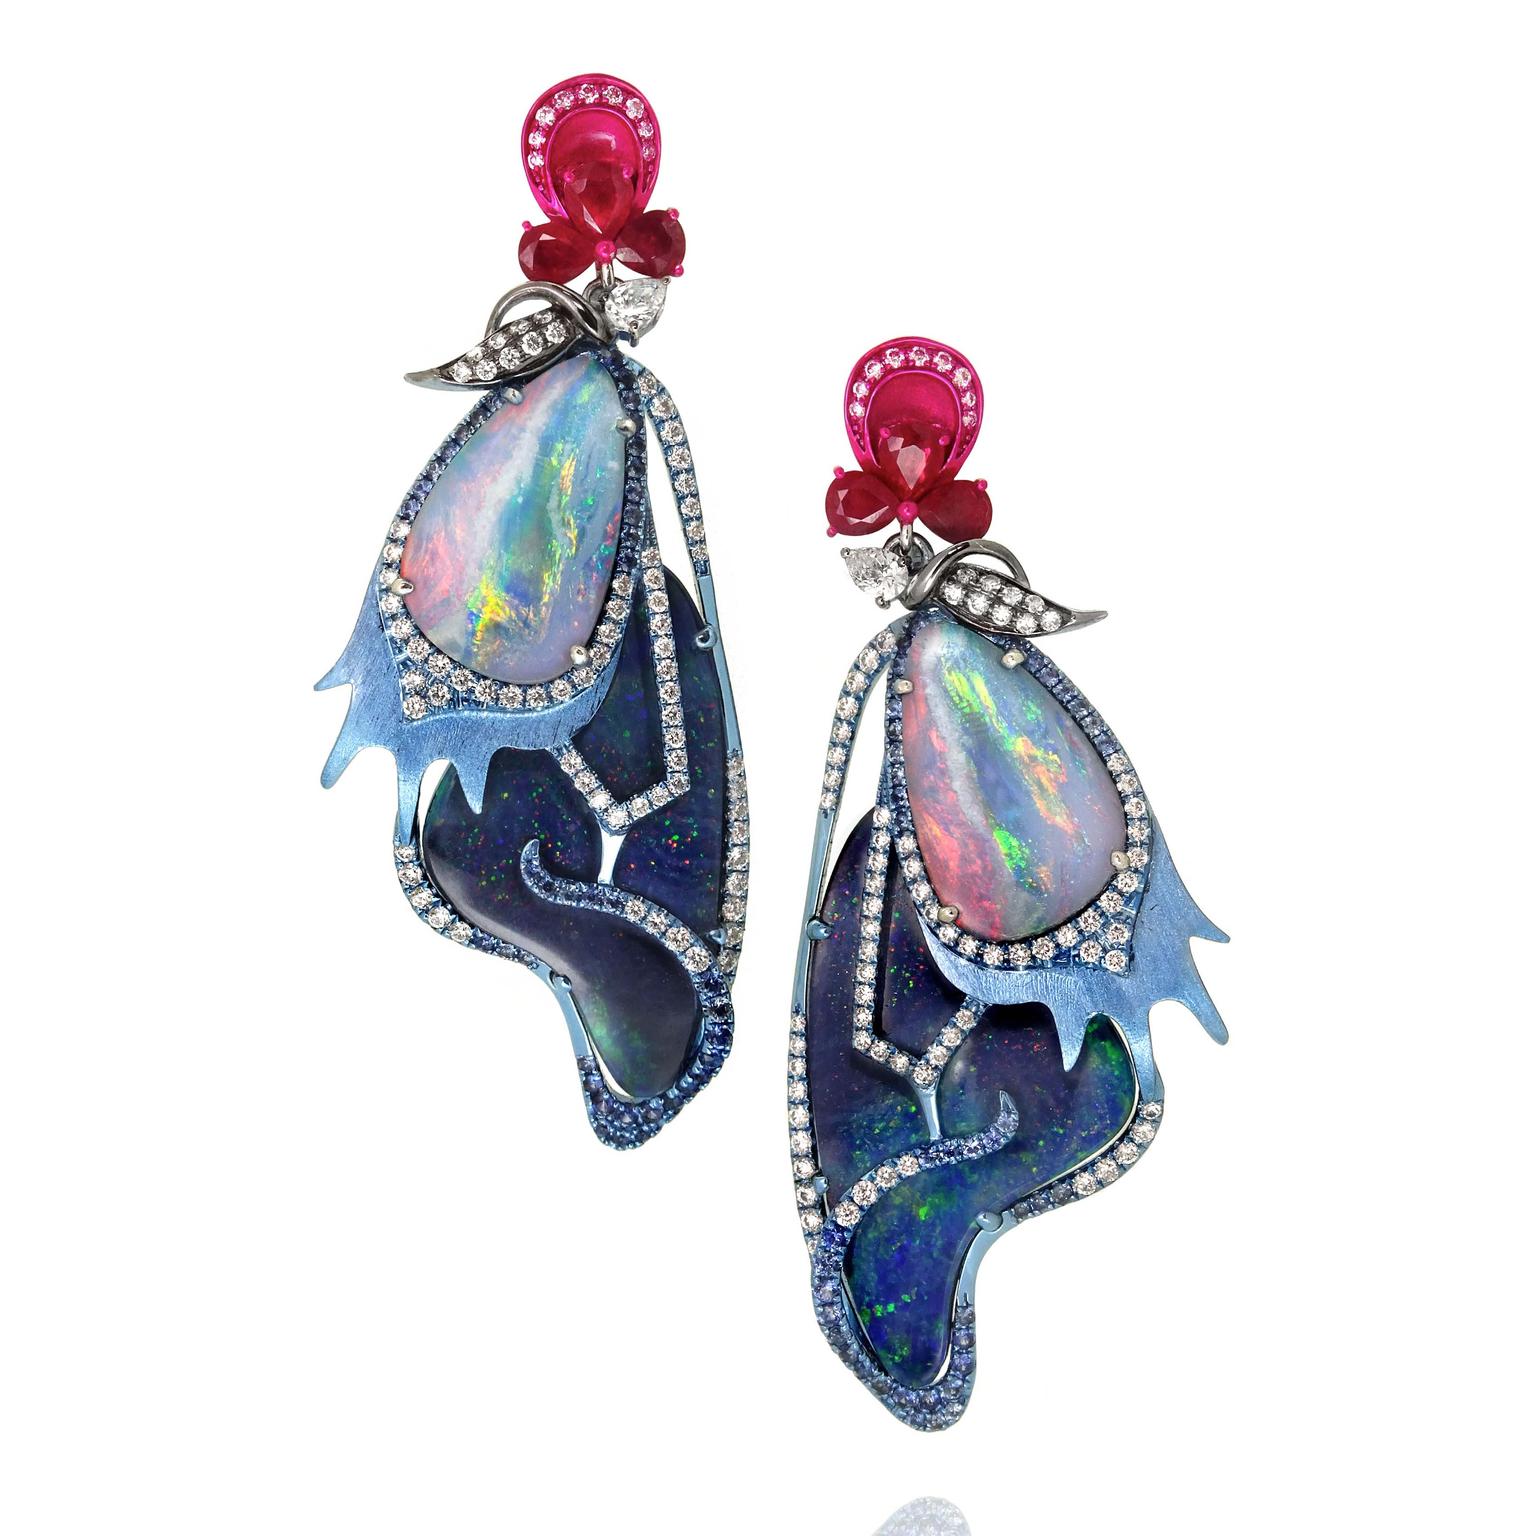 The Blue Morpho earrings from Austy Lee